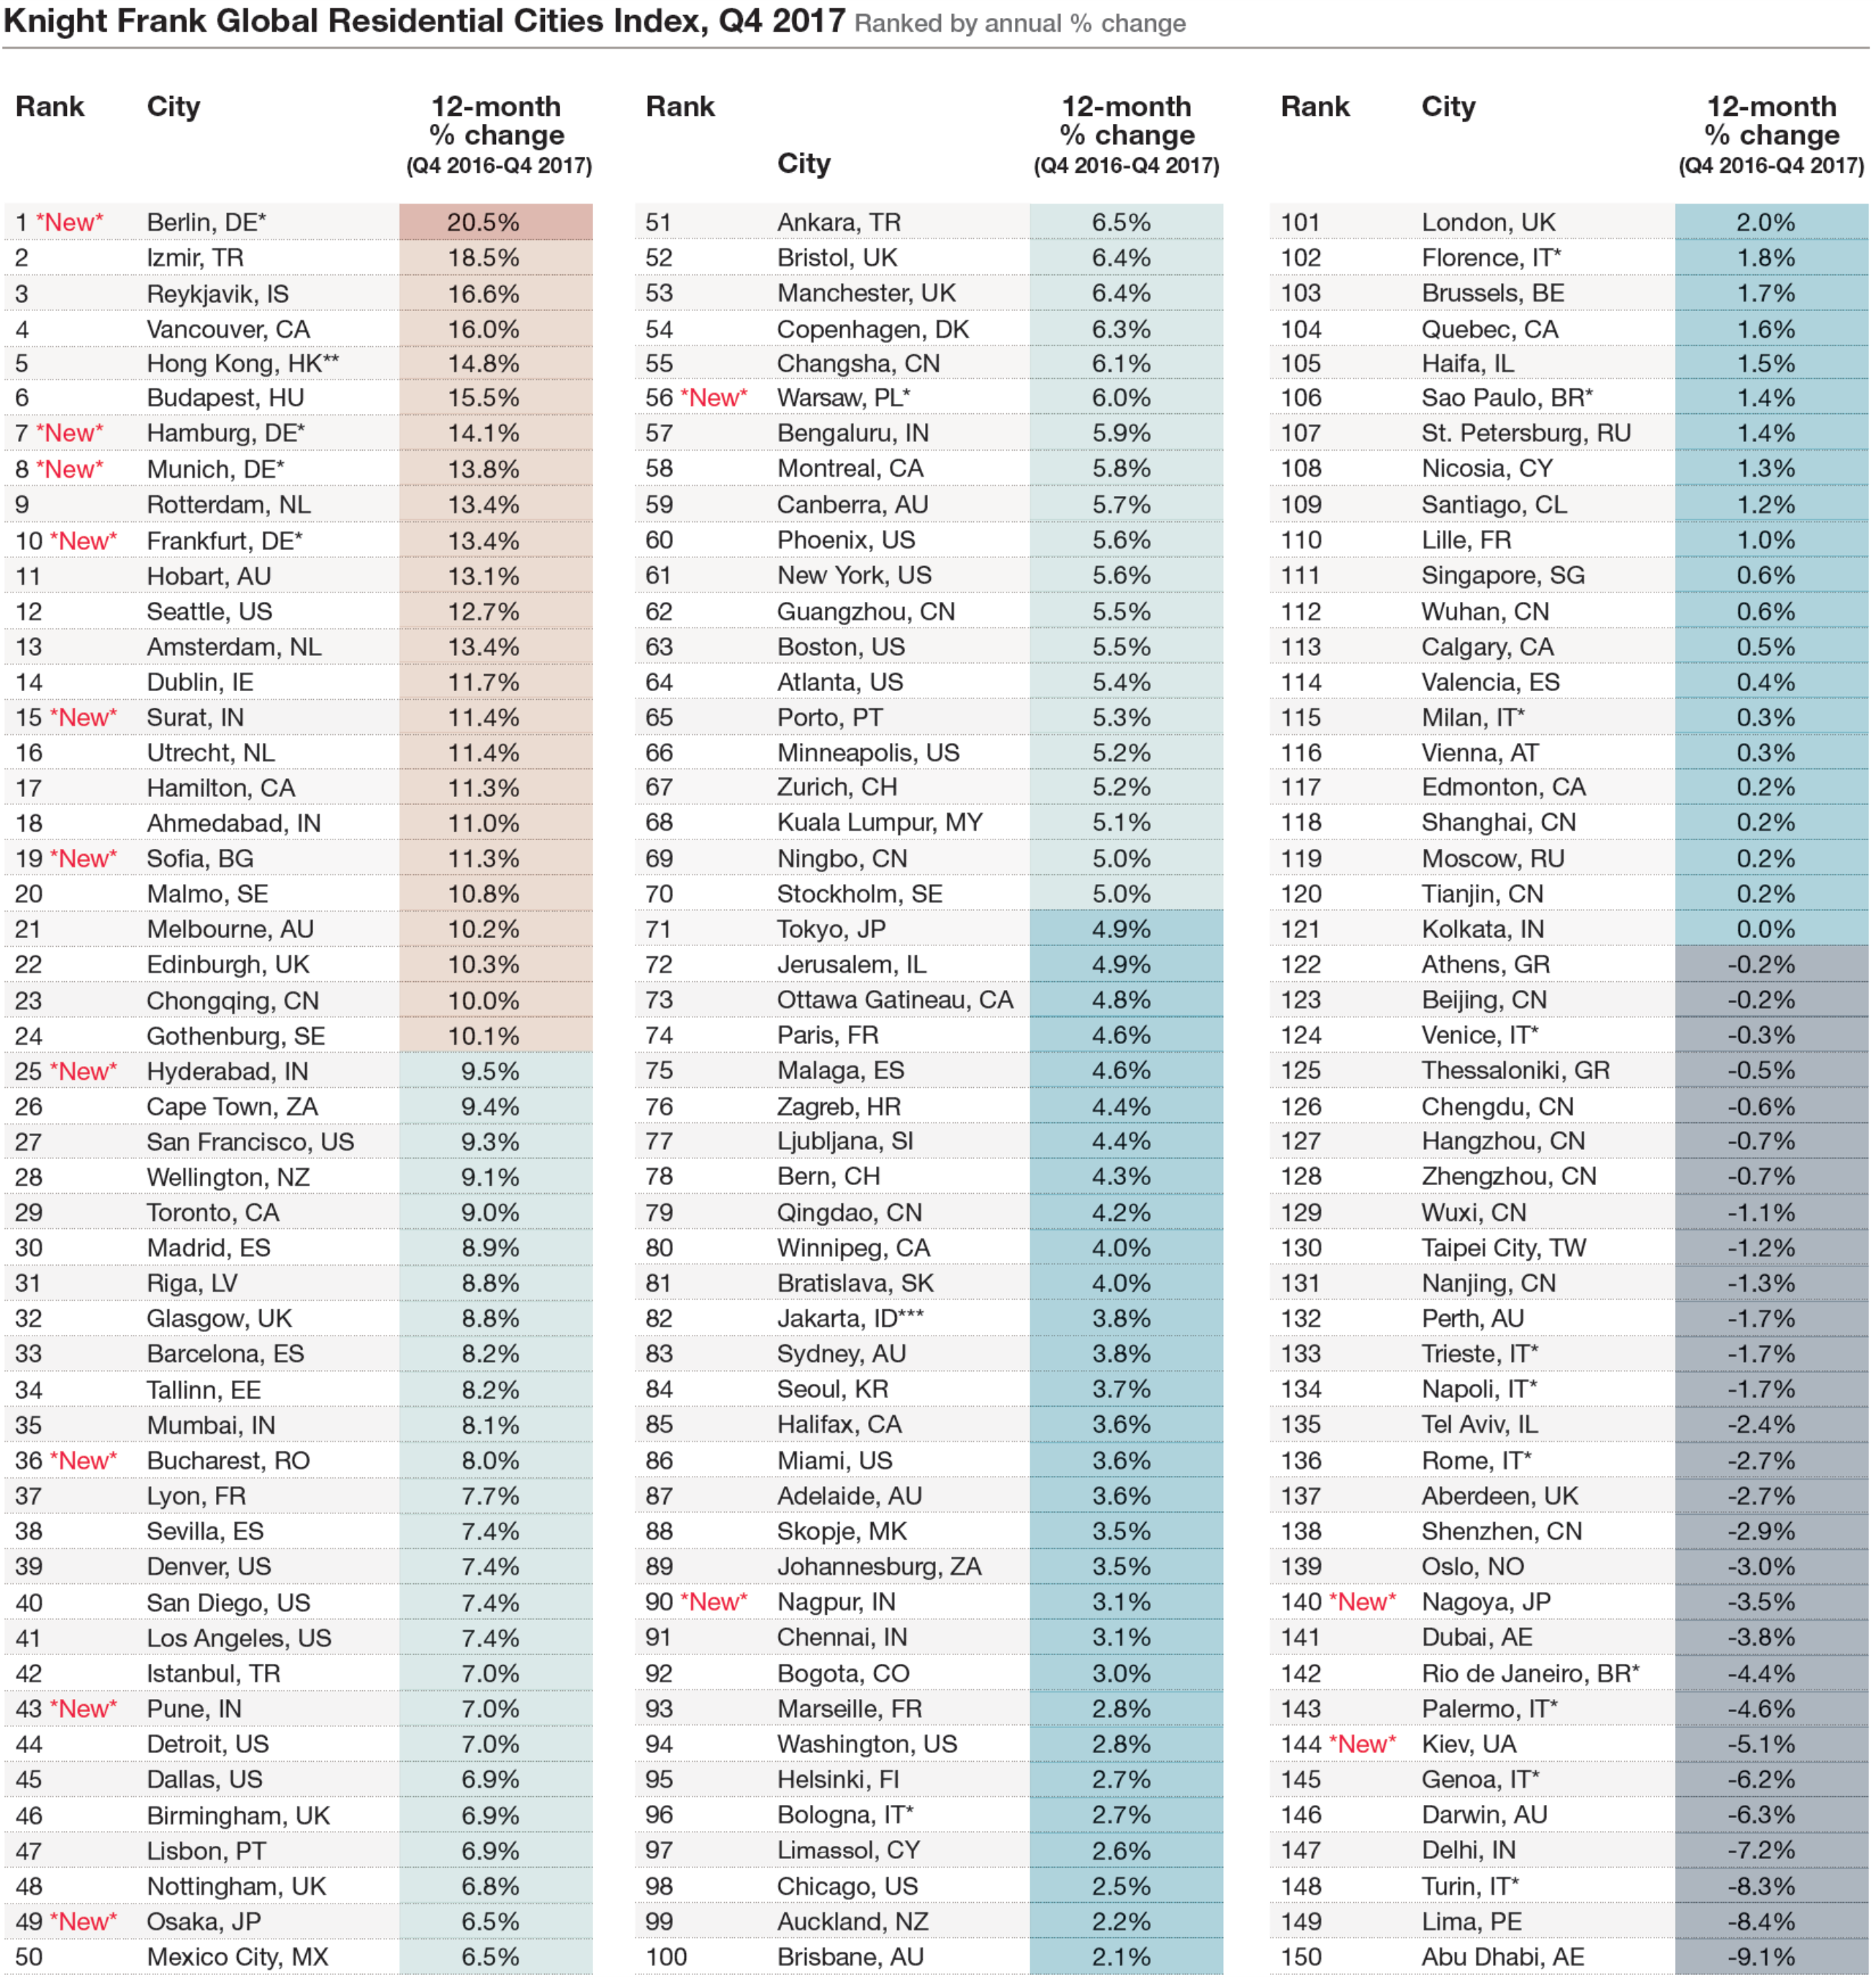 Global residental sities index ranked